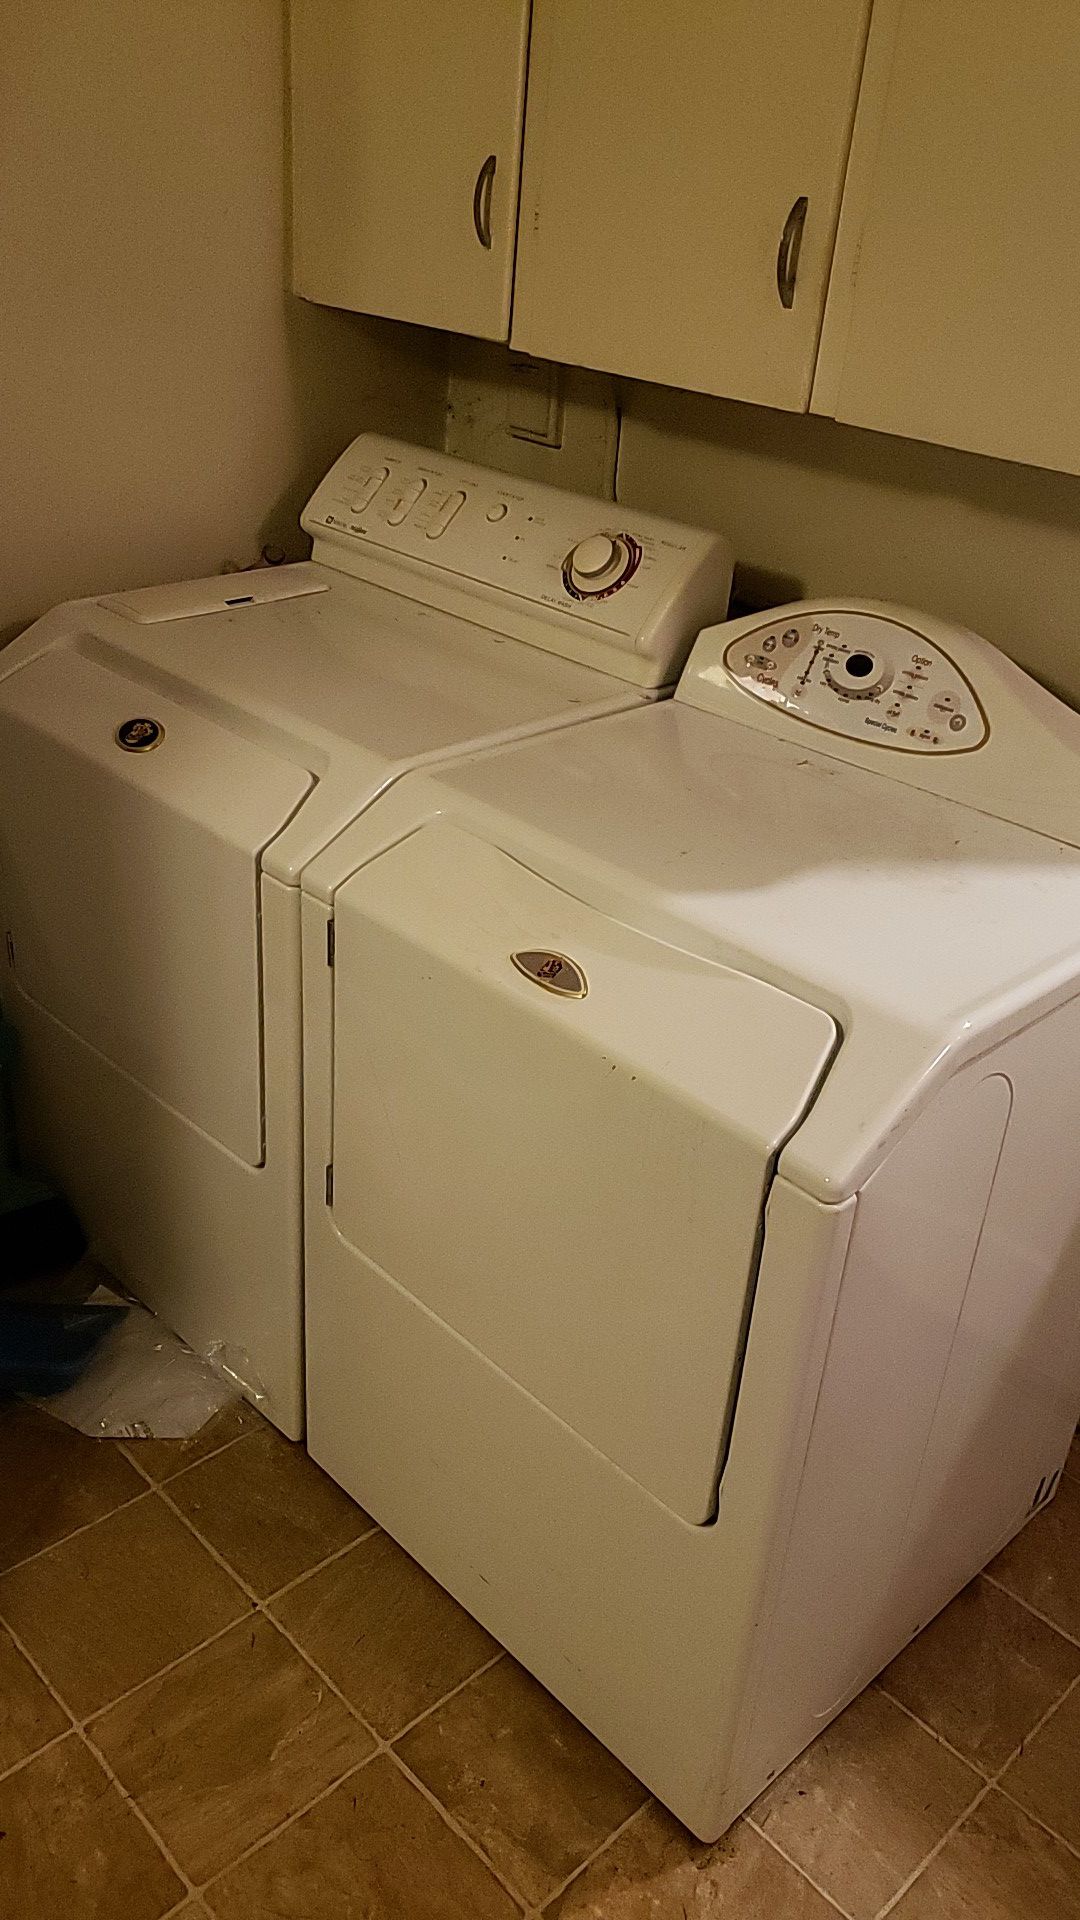 Maytag Neptune washer/ dryer set